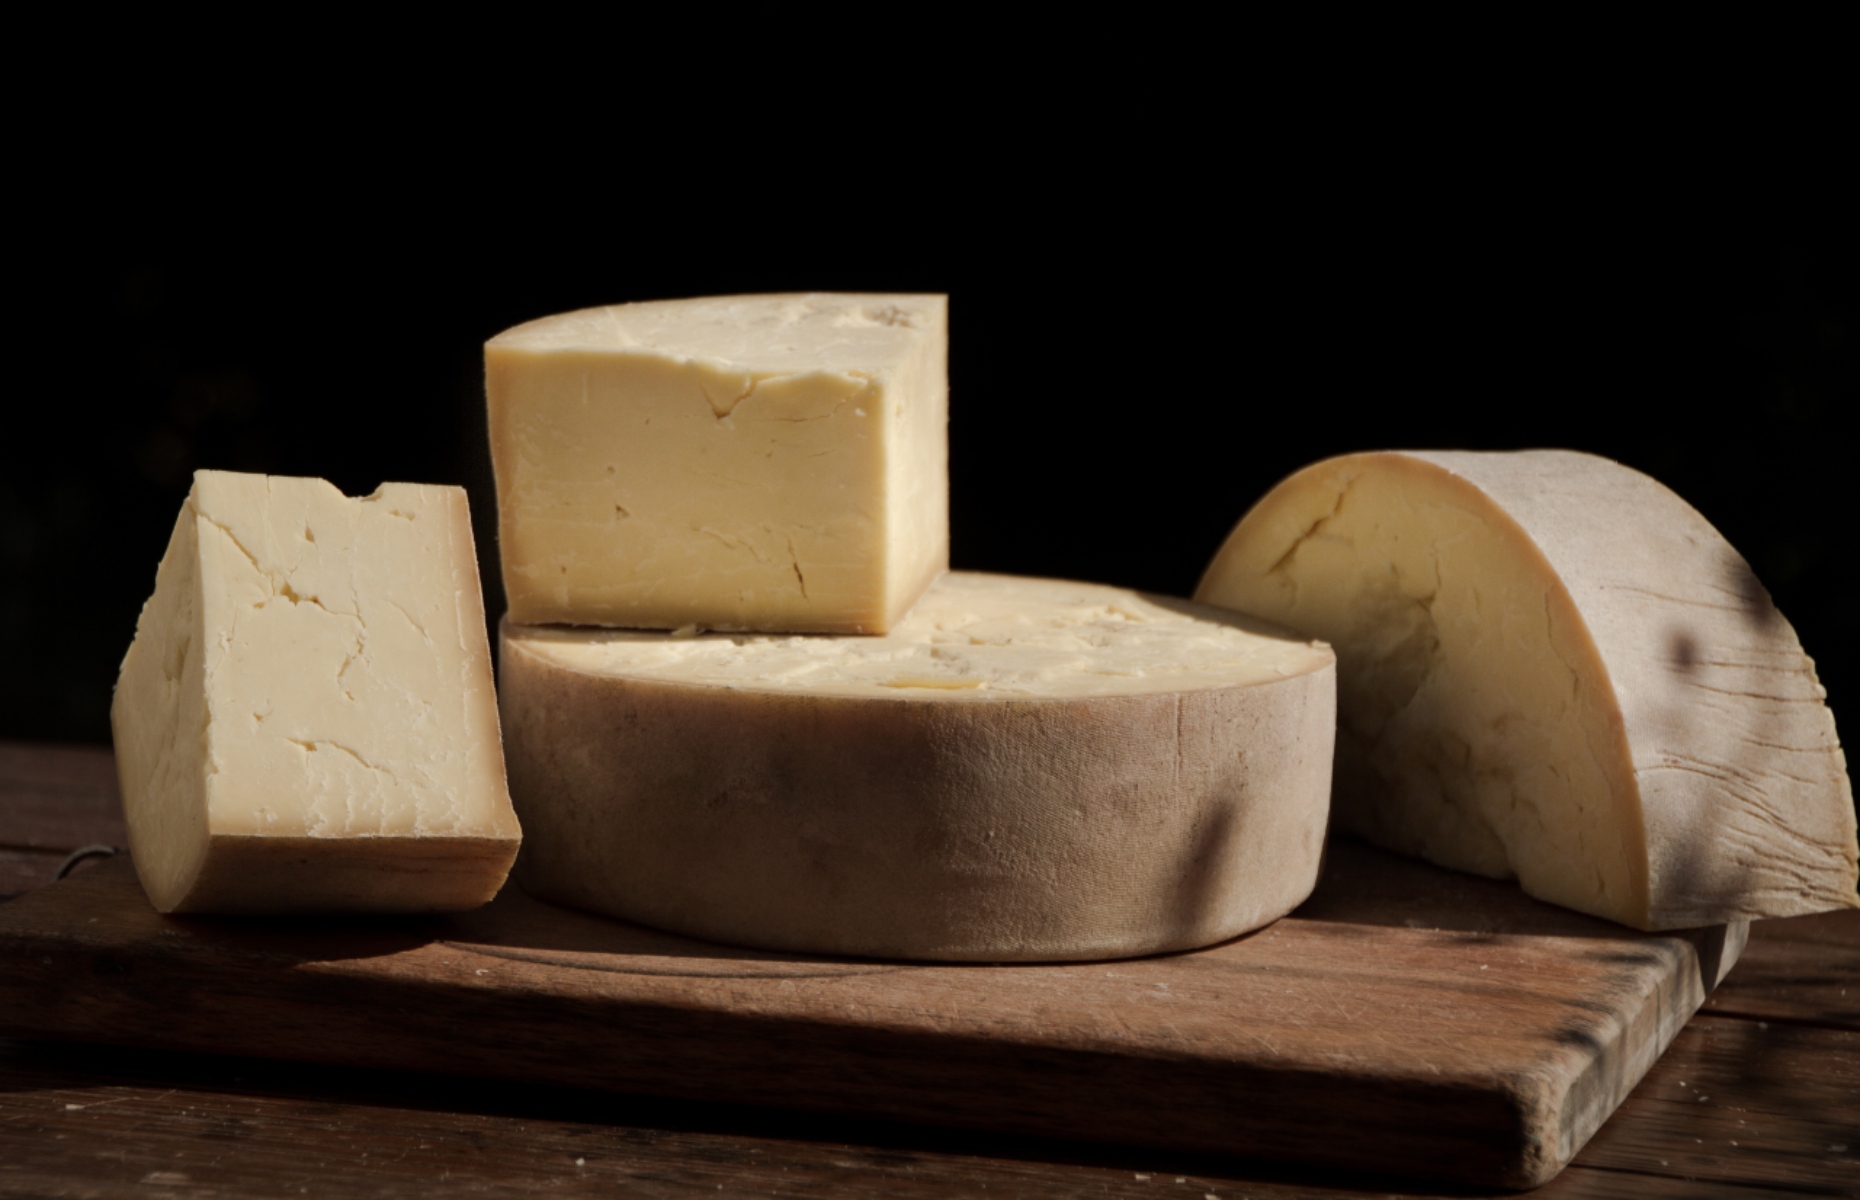 Caerphilly cheese (Image: Shock-Stock/Shutterstock)